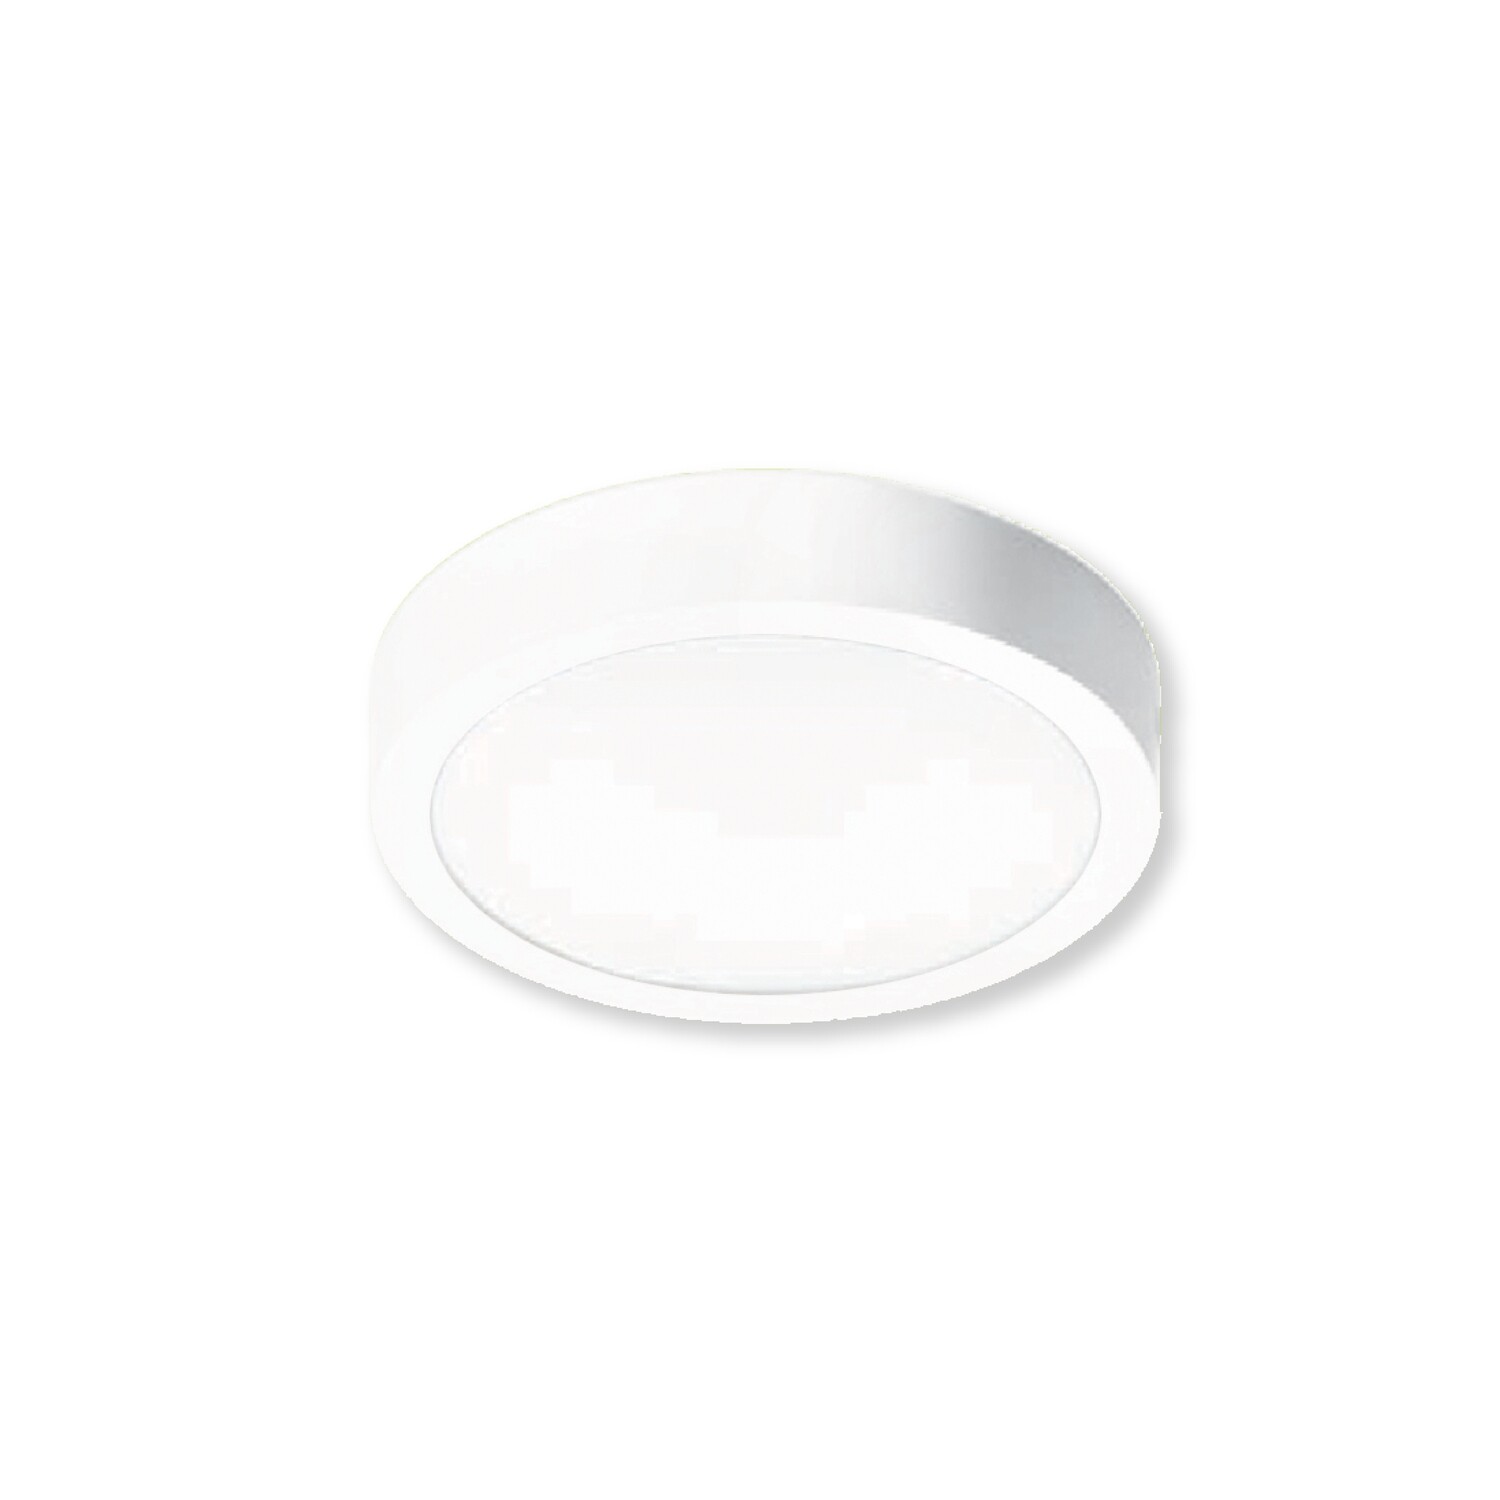 Lampara LED de sobreponer en caja metálica modelo POK estilo redonda en color blanco de 4" con luz cálida